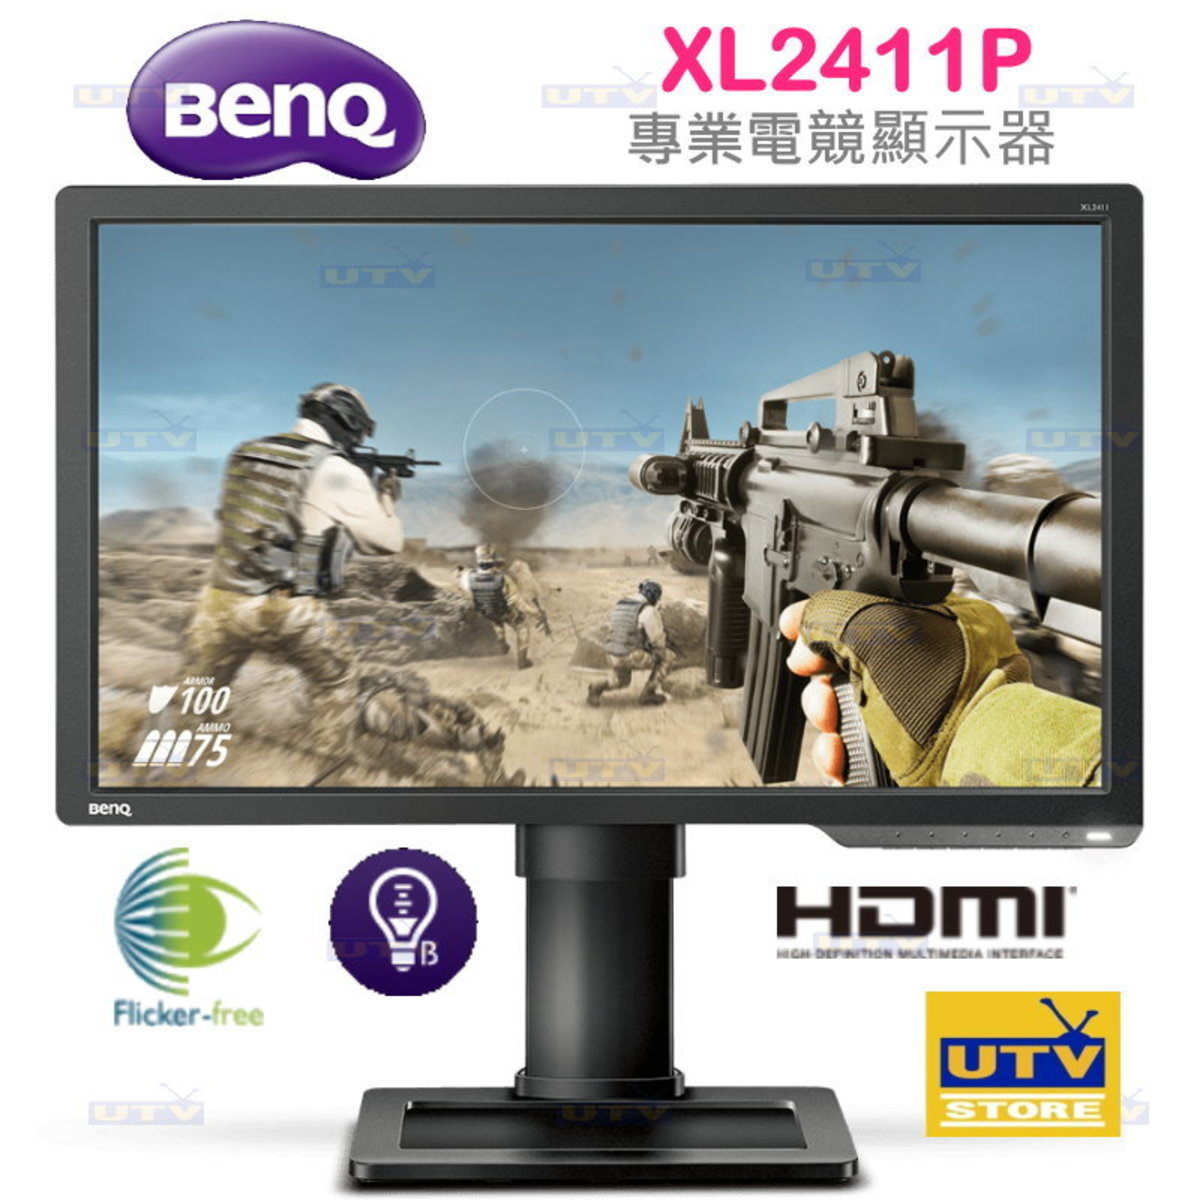 Benq Xl2411p 24 Zowie專業電竸顯示器 香港電視hktvmall 網上購物